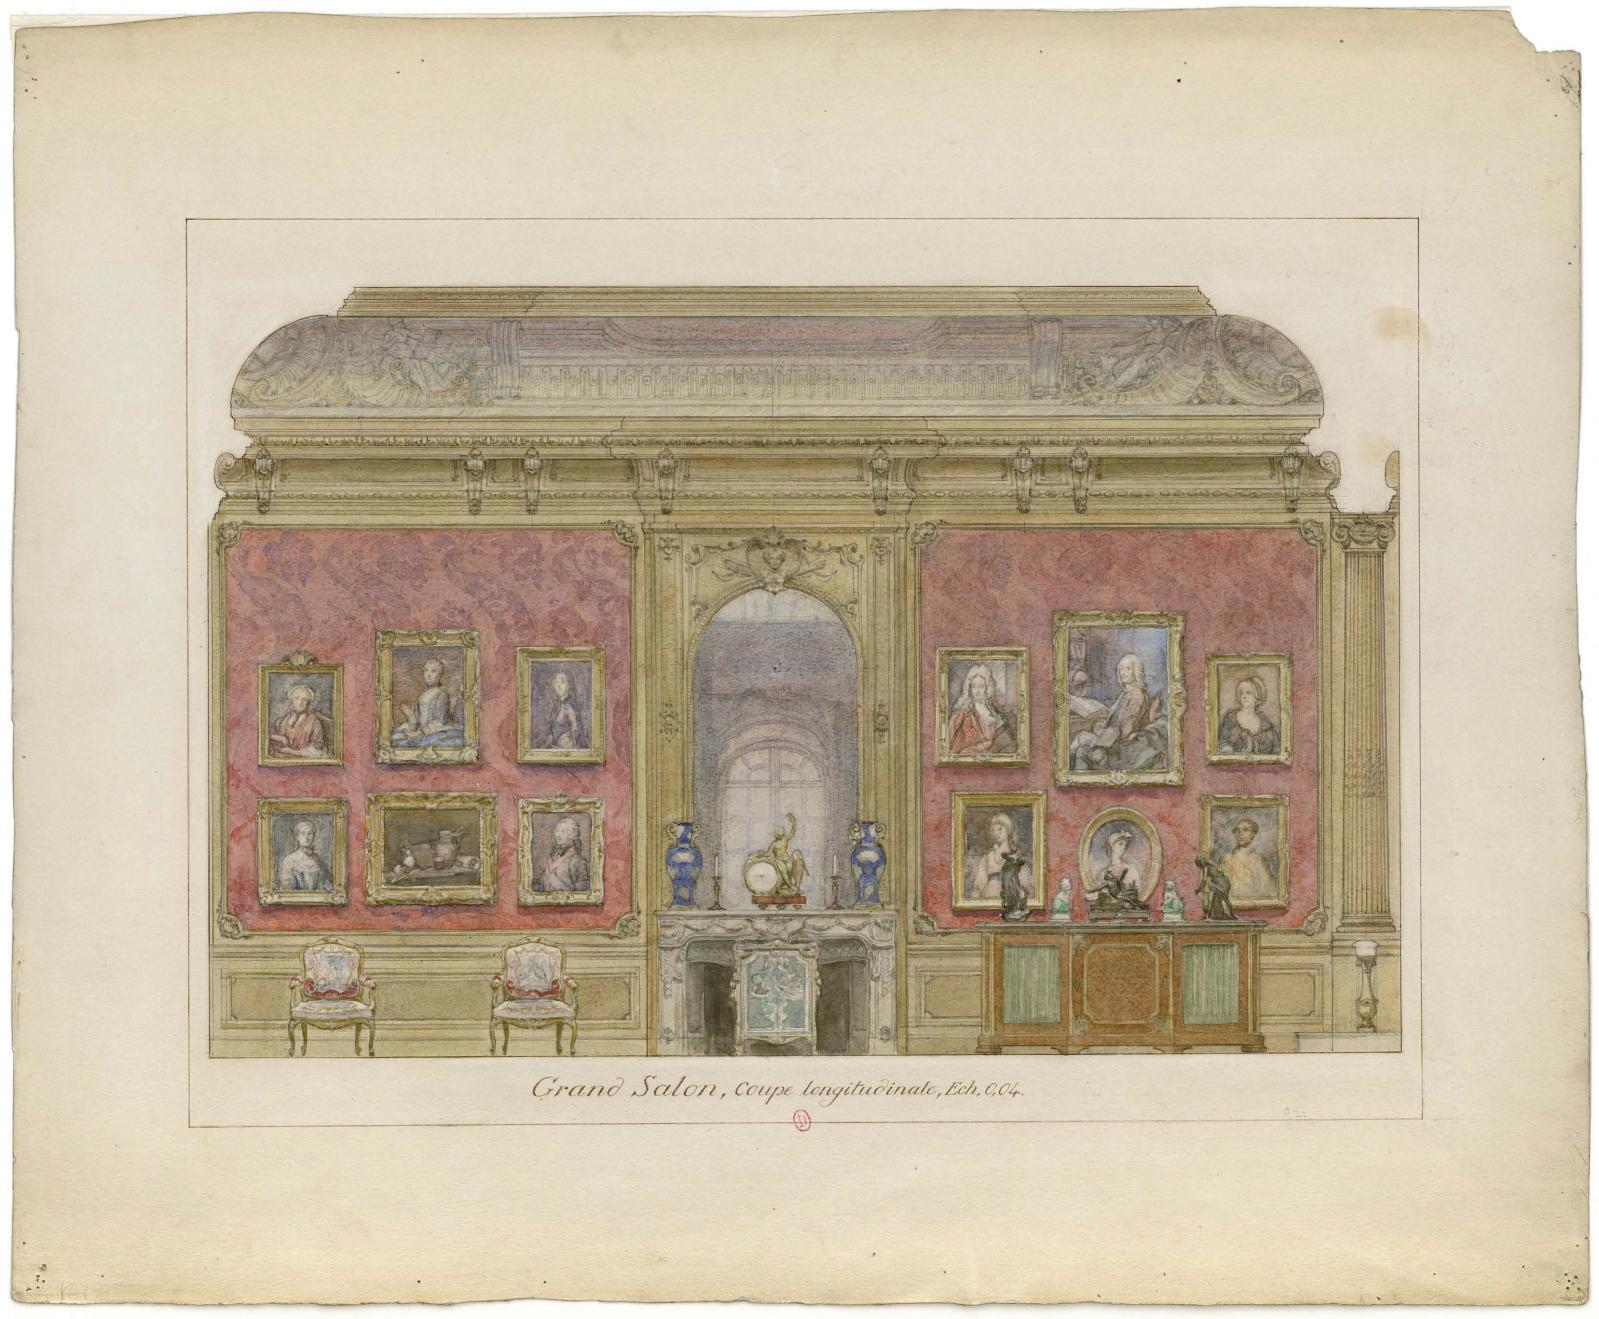 Adrien Karbowsky, Grand Salon, coupe longitudinale (élévation nord), 1907, graphite, aquarelle, gouache, plume et encre brune, 45,2 x 55,2